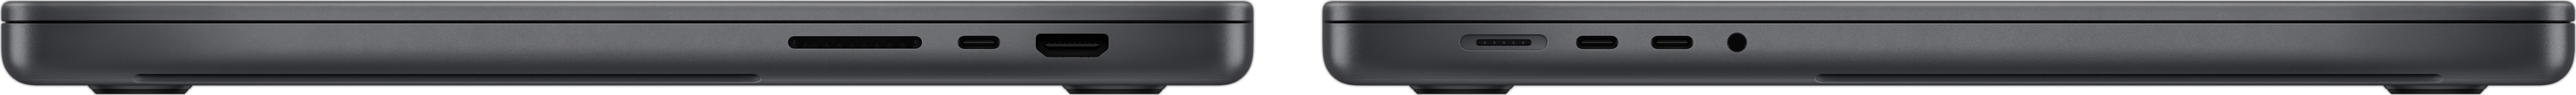 มุมมองด้านข้างของ MacBook Pro แสดงช่องเสียบการ์ด SDXC, พอร์ต Thunderbolt 4 จำนวน 3 พอร์ต, พอร์ต HDMI, พอร์ตชาร์จ MagSafe 3 และช่องต่อหูฟัง